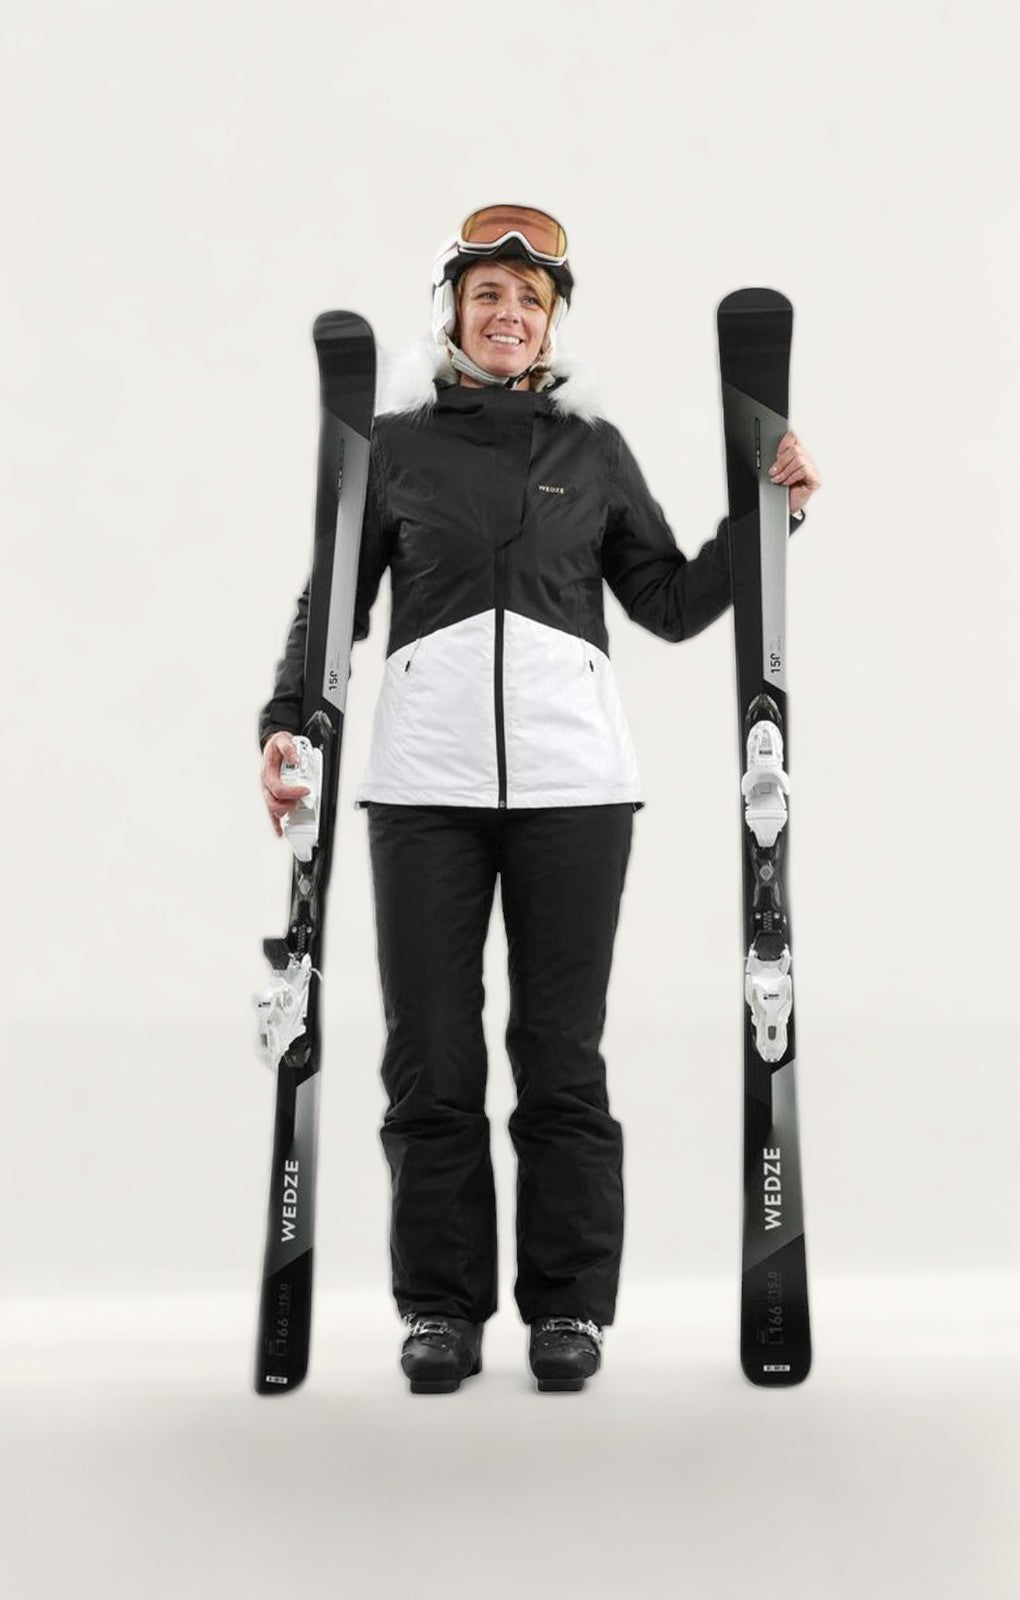 Decathlon Black & White Women's Ski Jacket product image